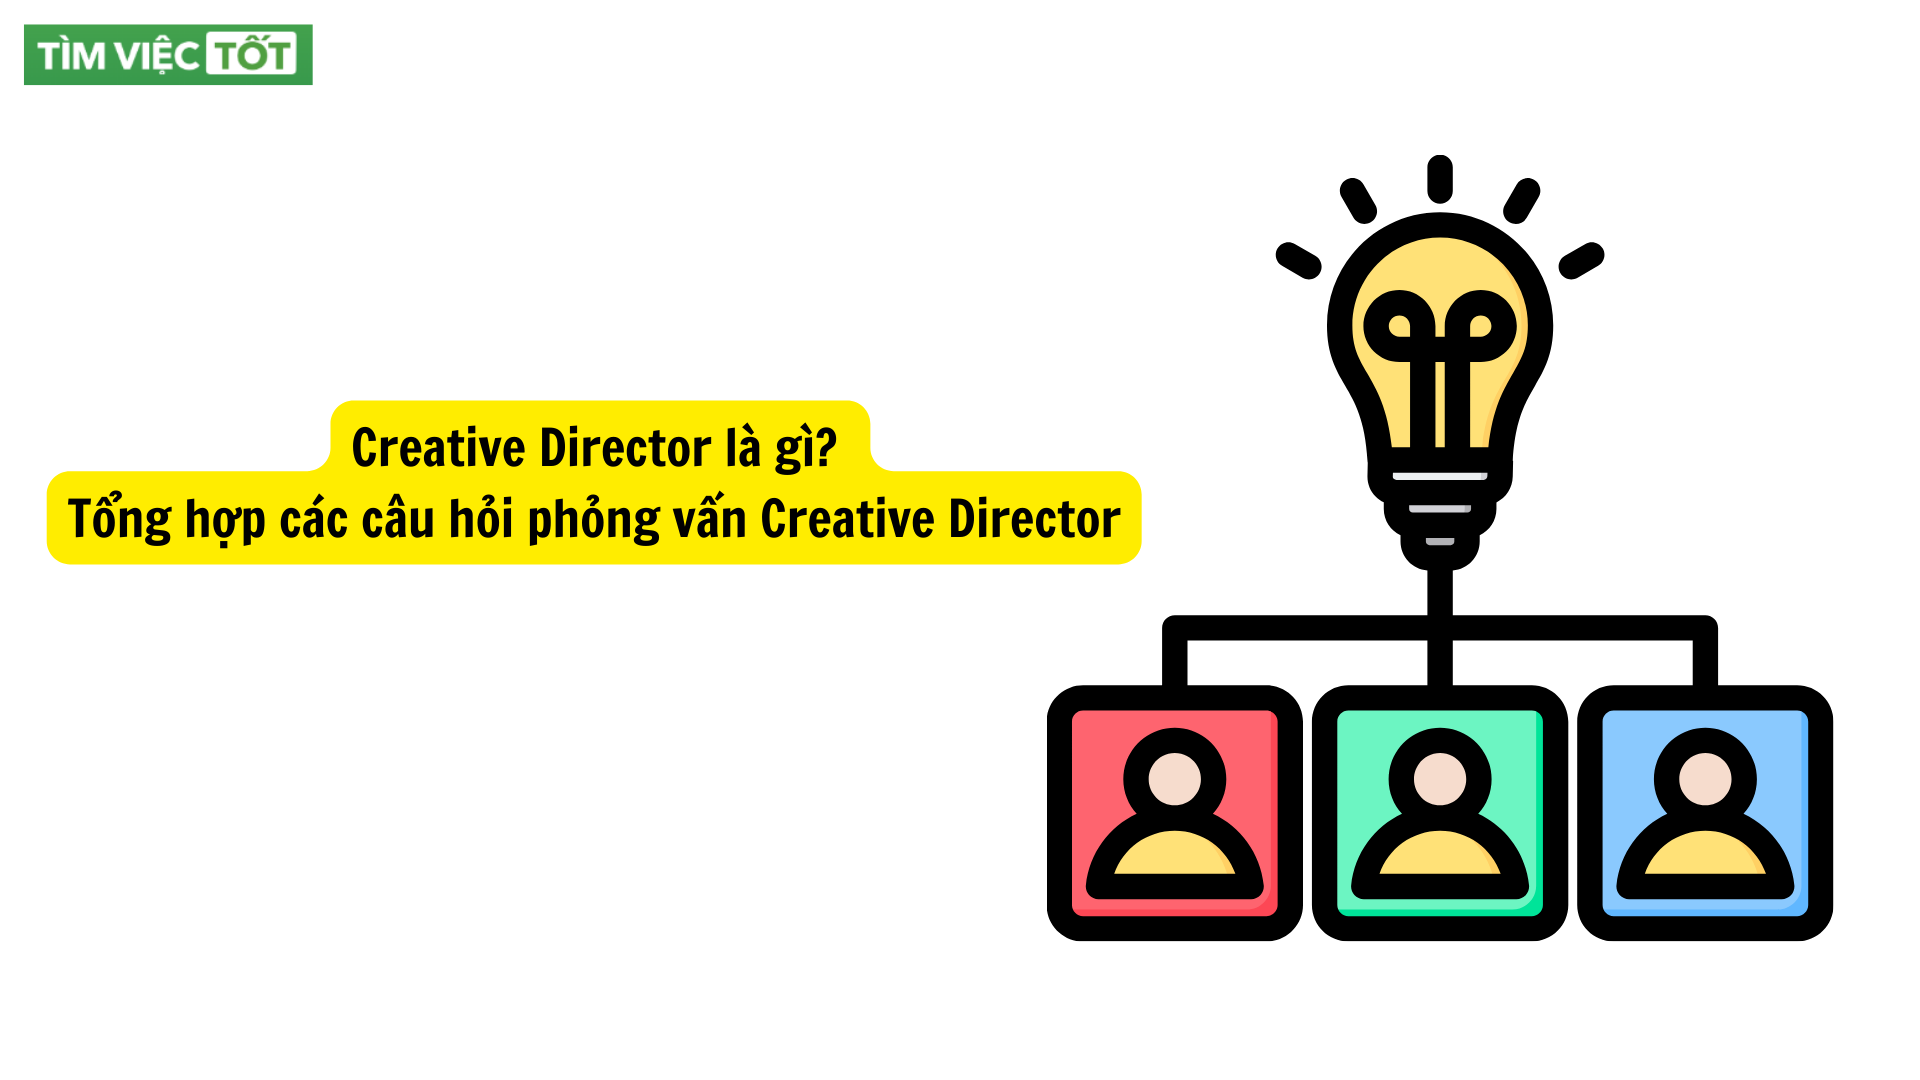 Creative Director là gì? Tổng hợp các câu hỏi phỏng vấn Creative Director